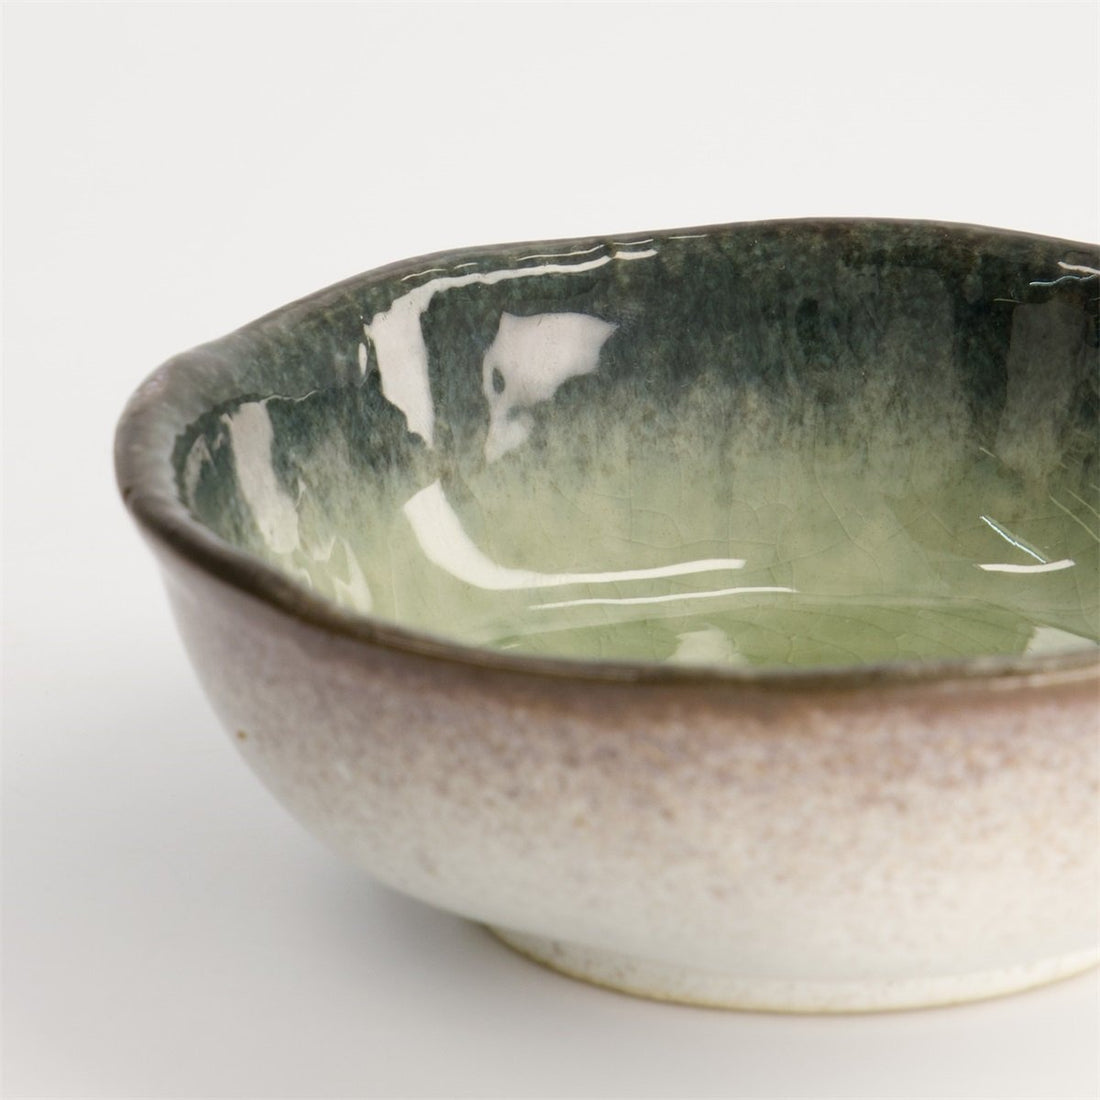 Glassy Green Yamasaky Organic Ramen Bowl